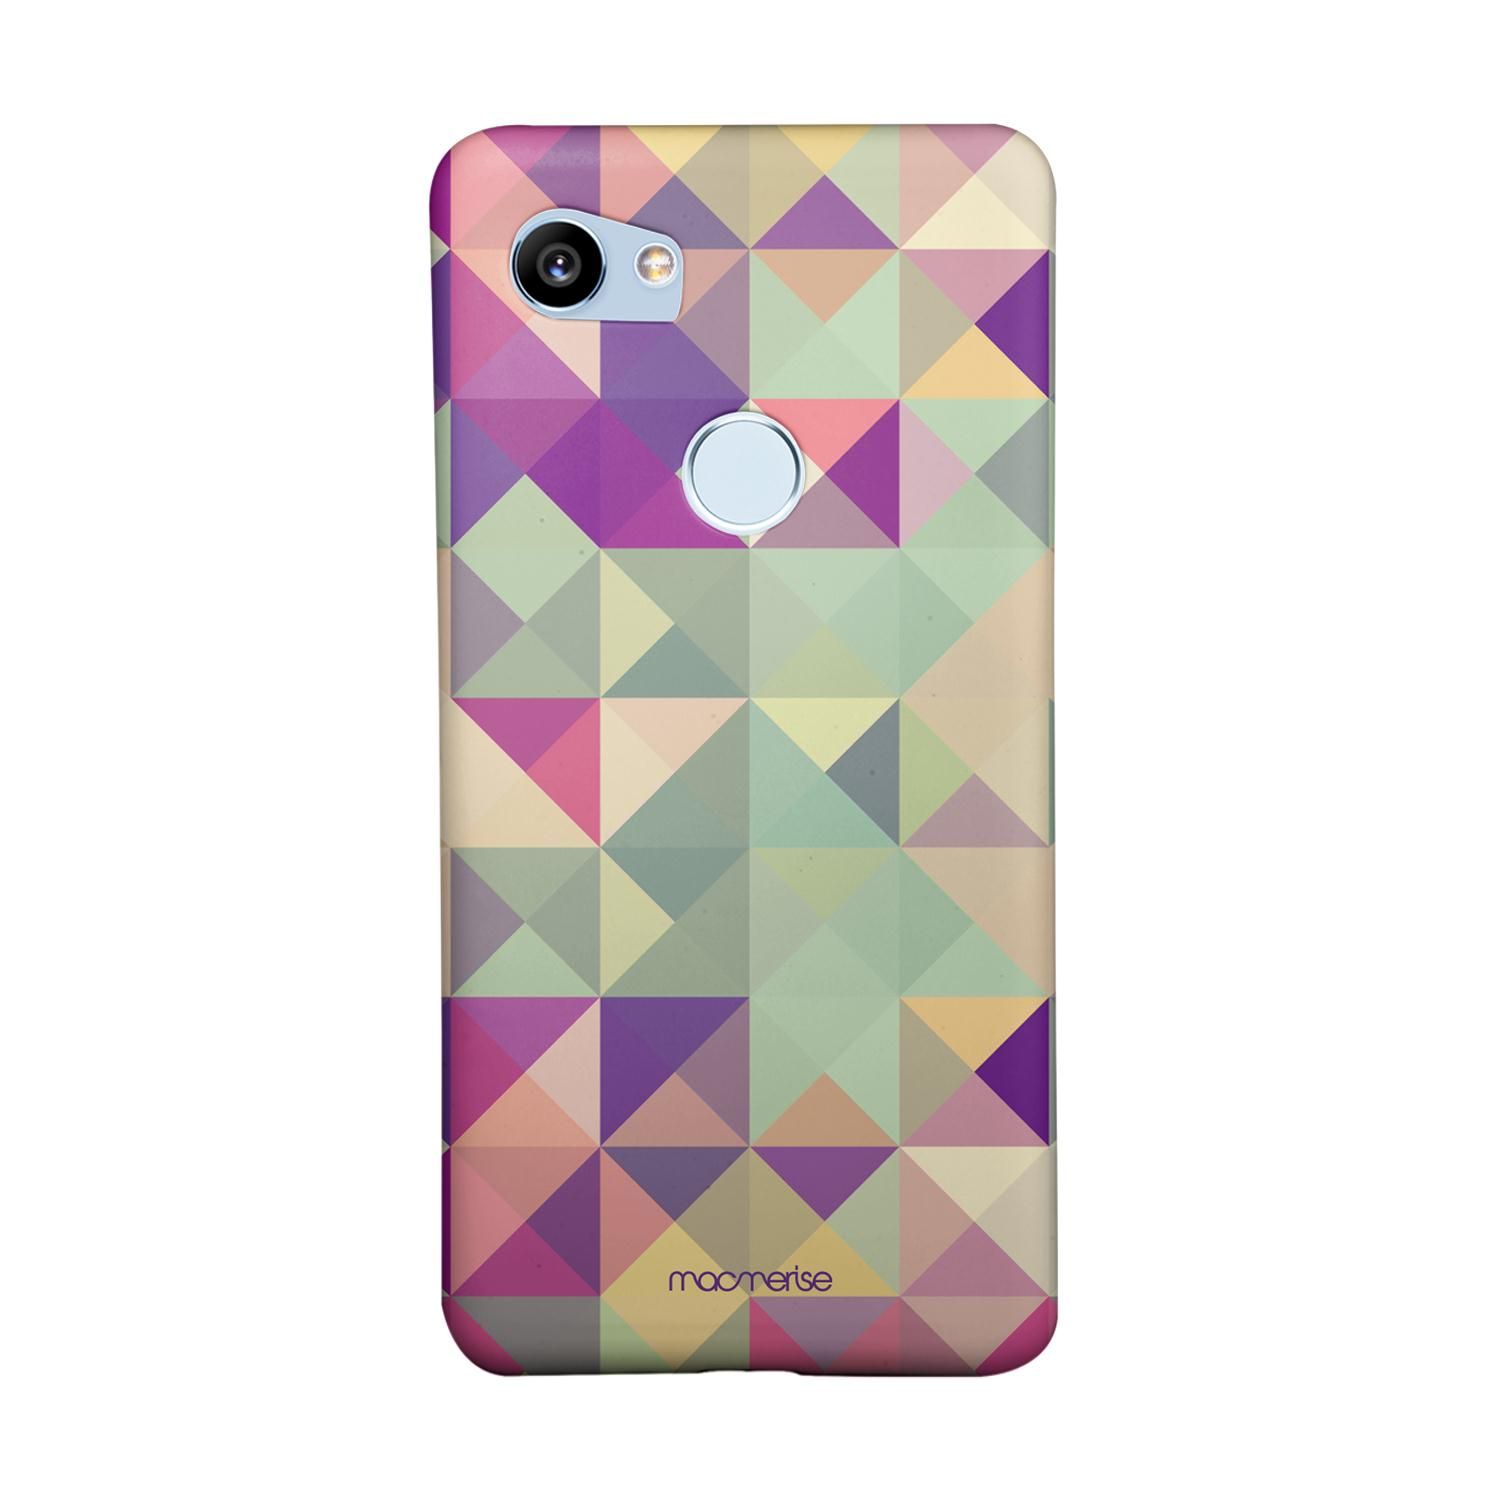 Kaleido - Sleek Phone Case for Google Pixel 2 XL